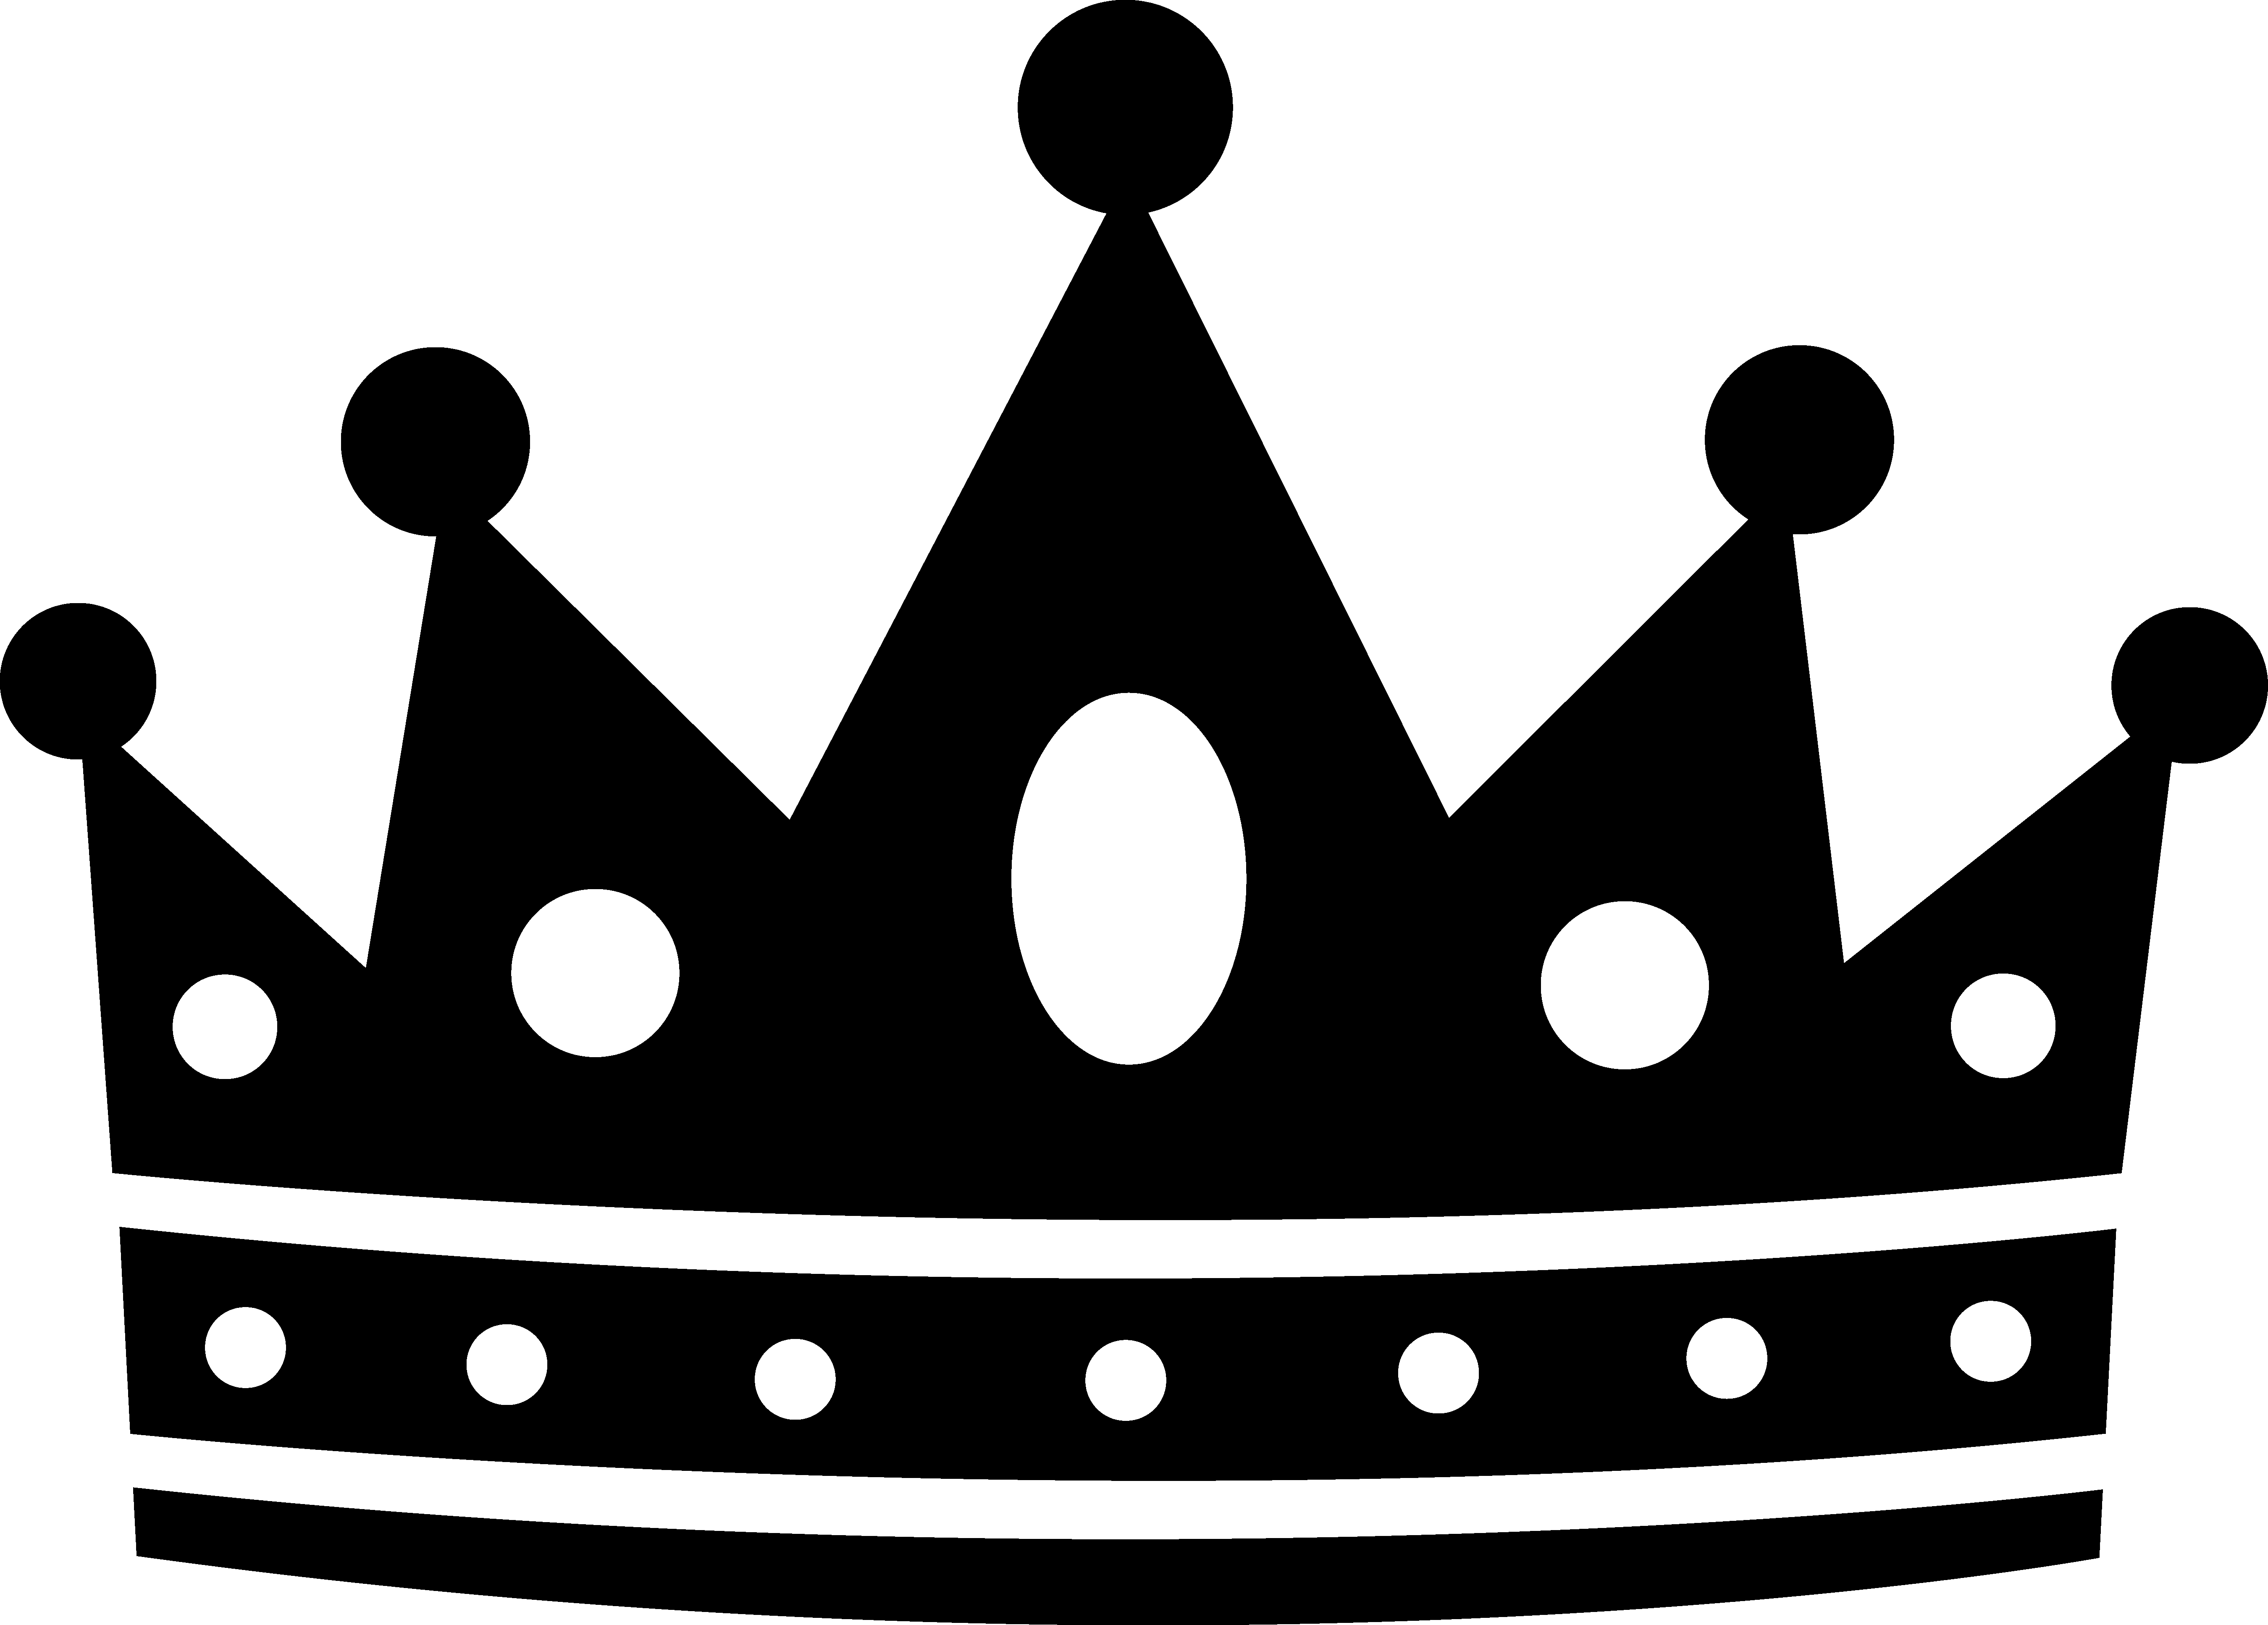 crowns clipart evil